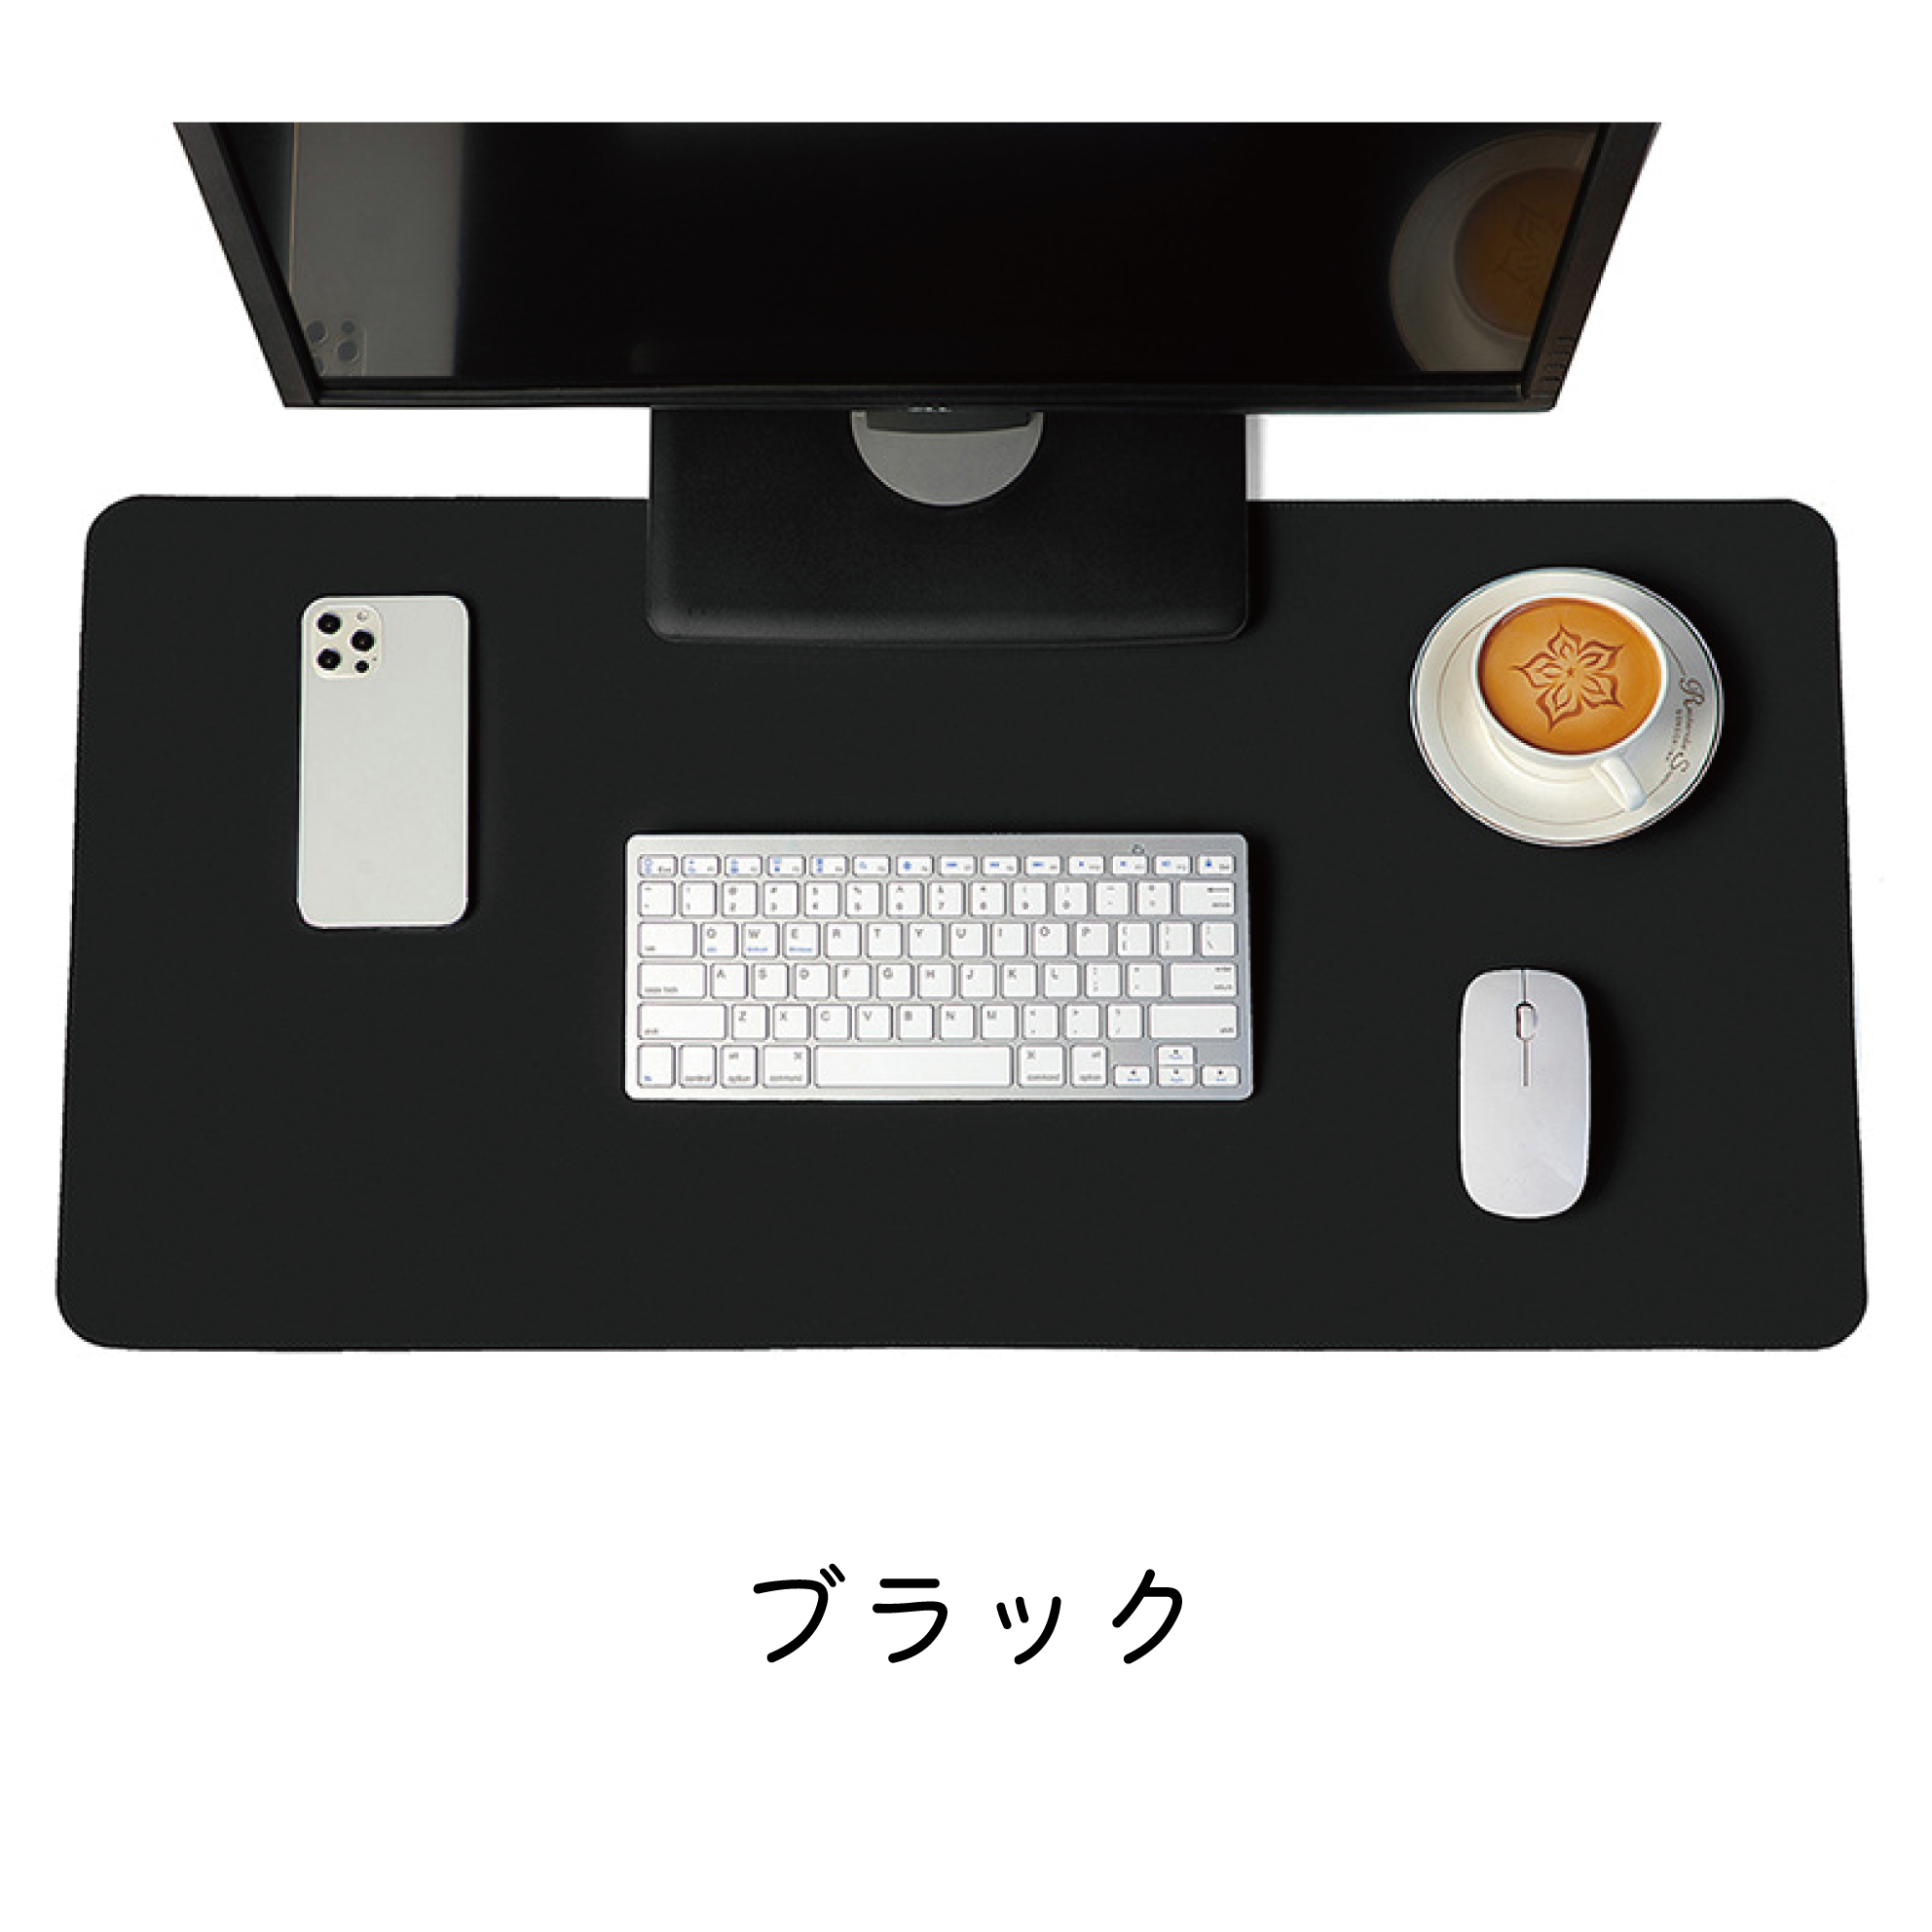 デスクマット マウスパッド おしゃれ オフィス レザー調 カラー 高品質 パソコンマット 80cm×...